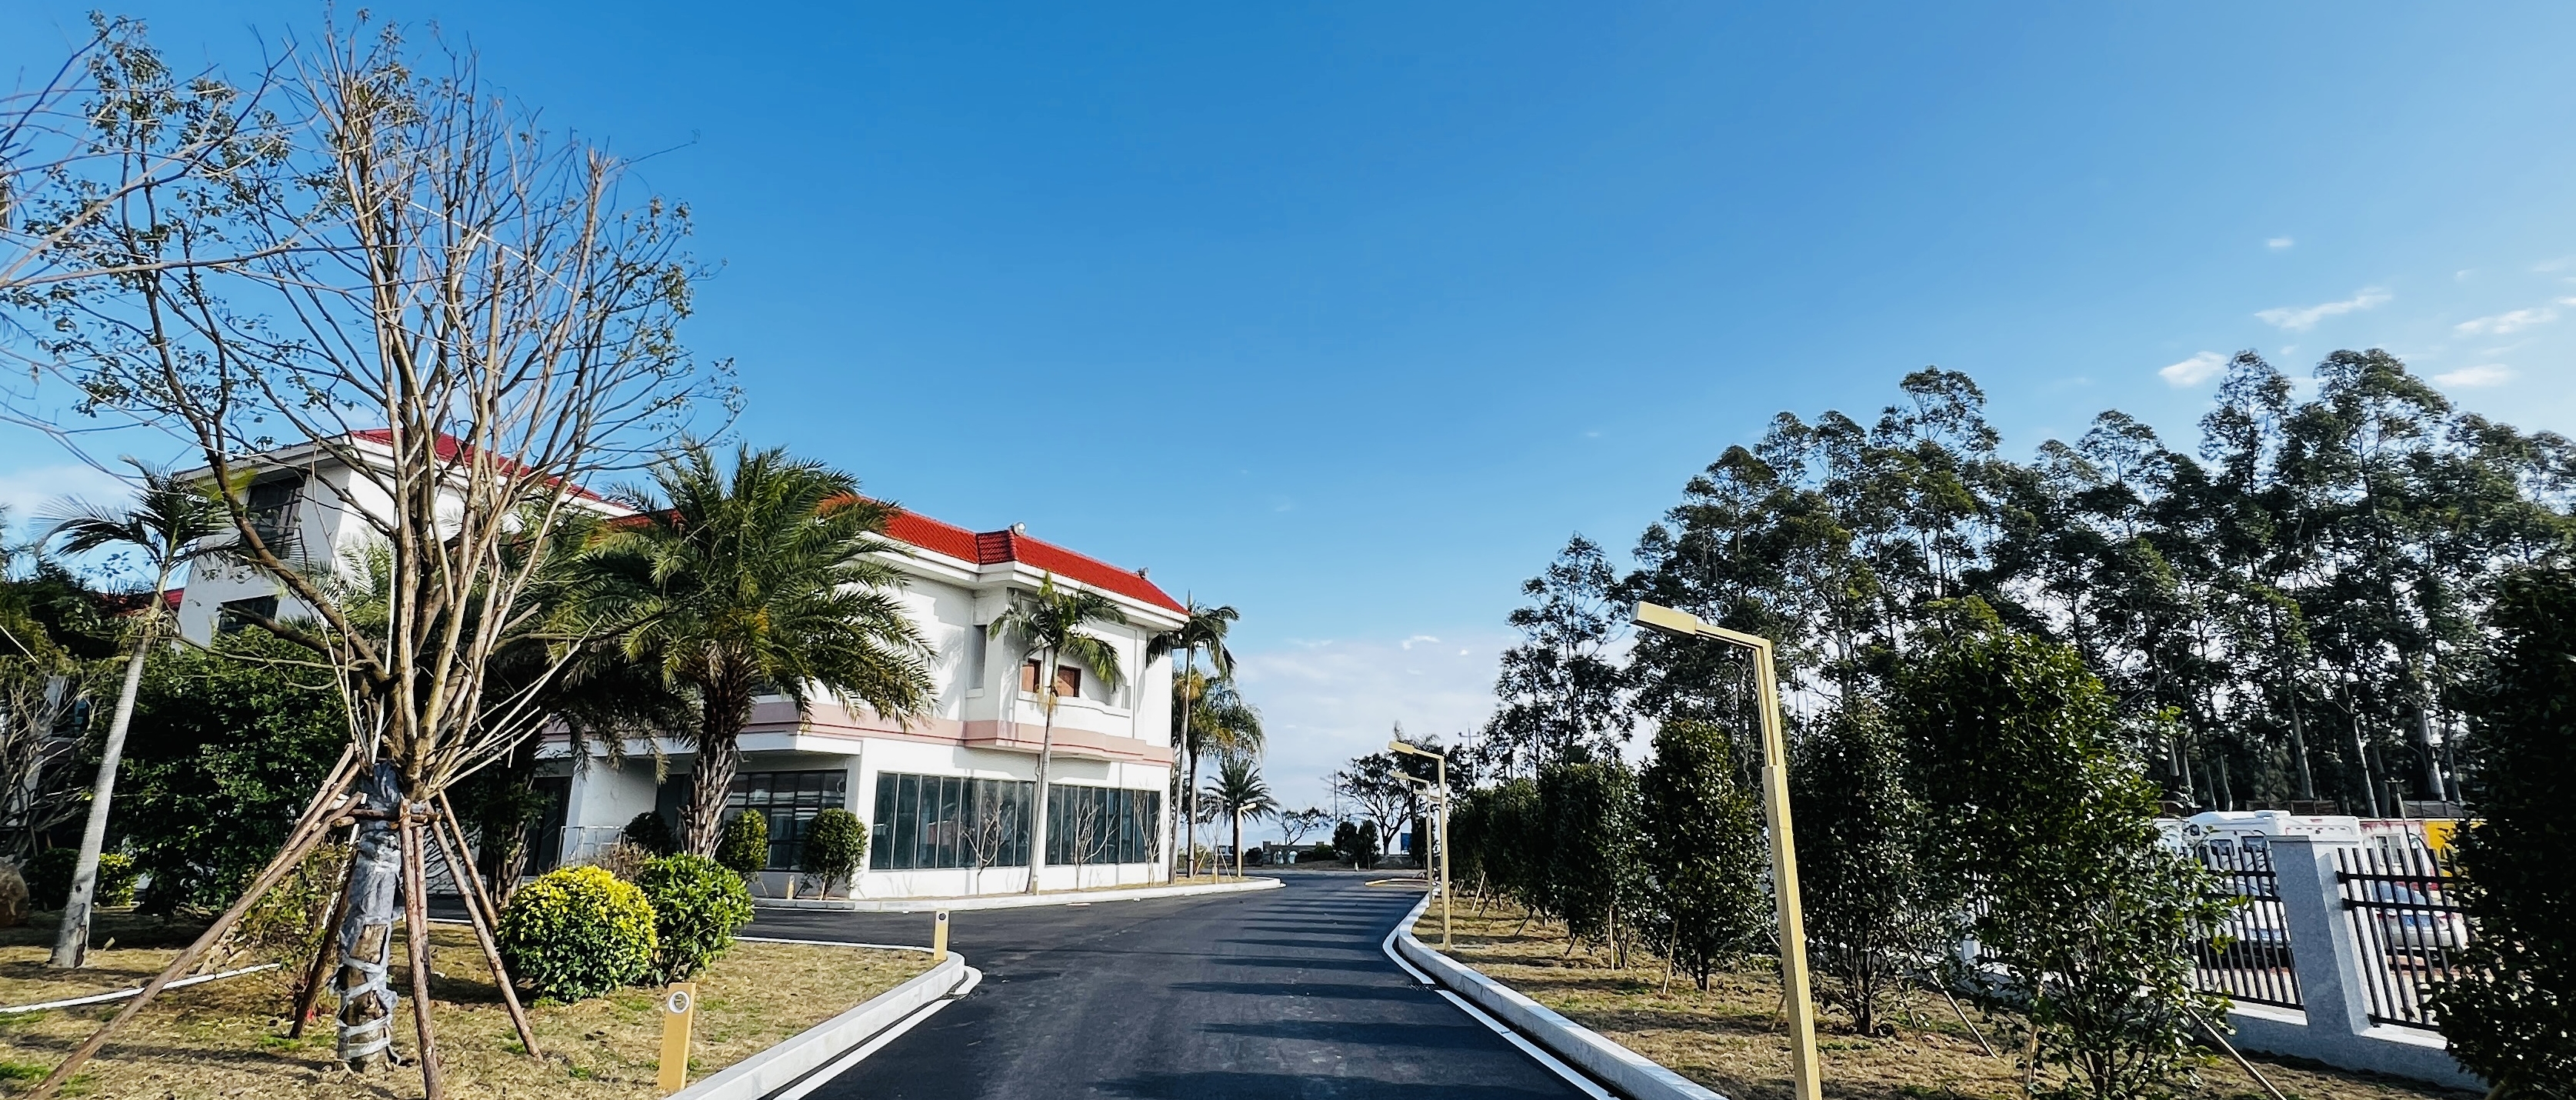 马尾望江楼酒店全新升级 将于“五一”对外开放